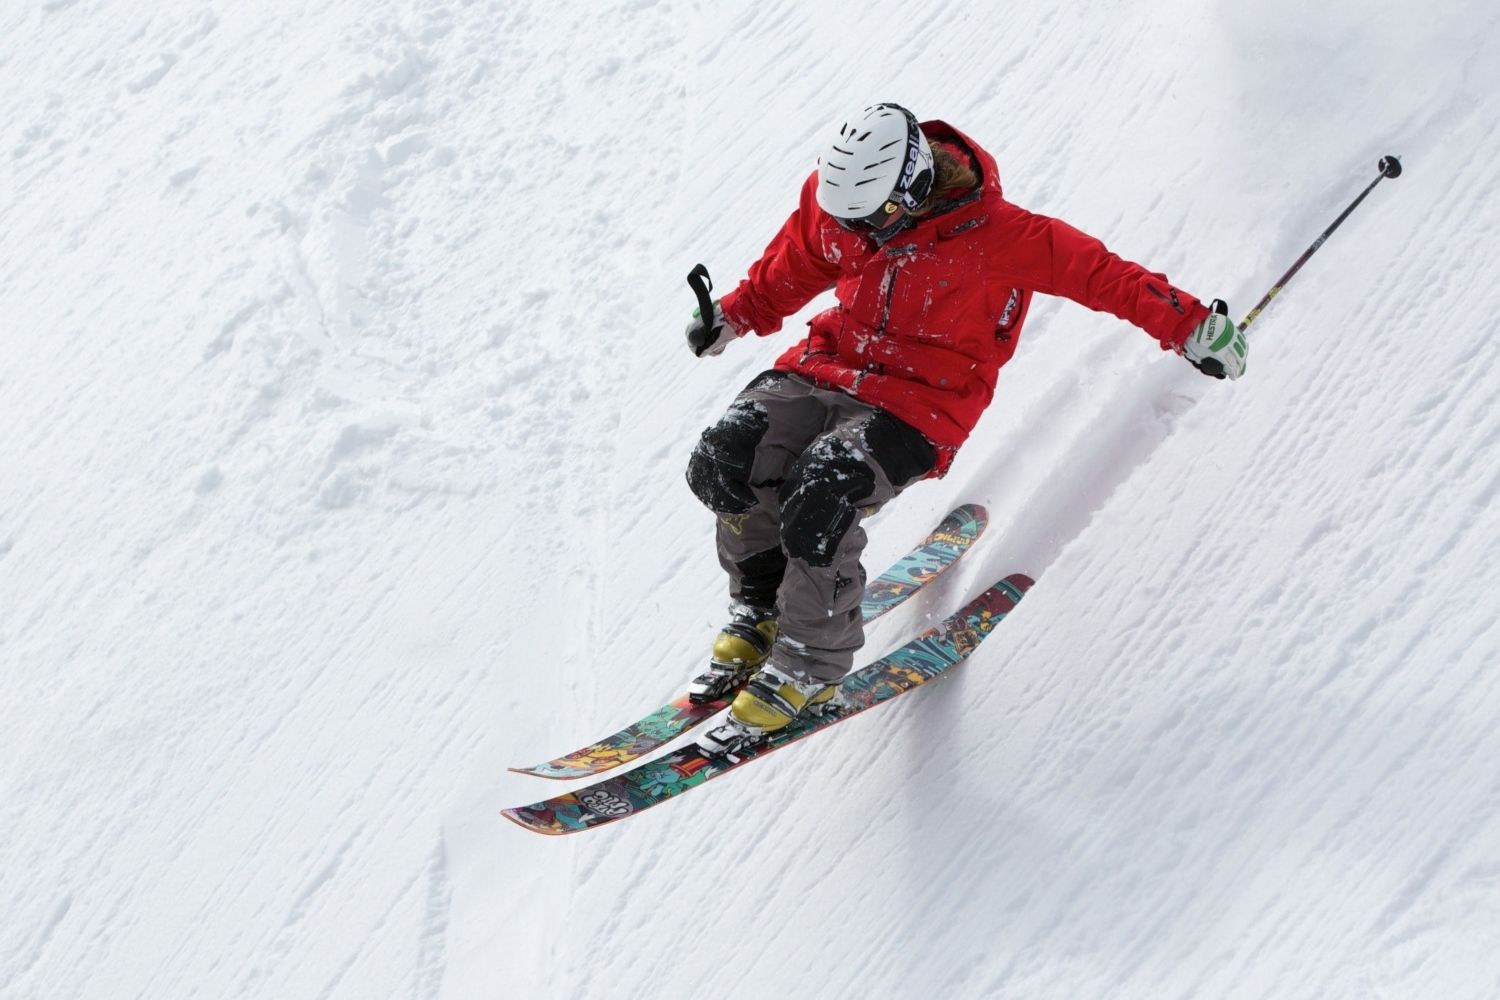 Lidl tiene la de esquí más barata del mercado